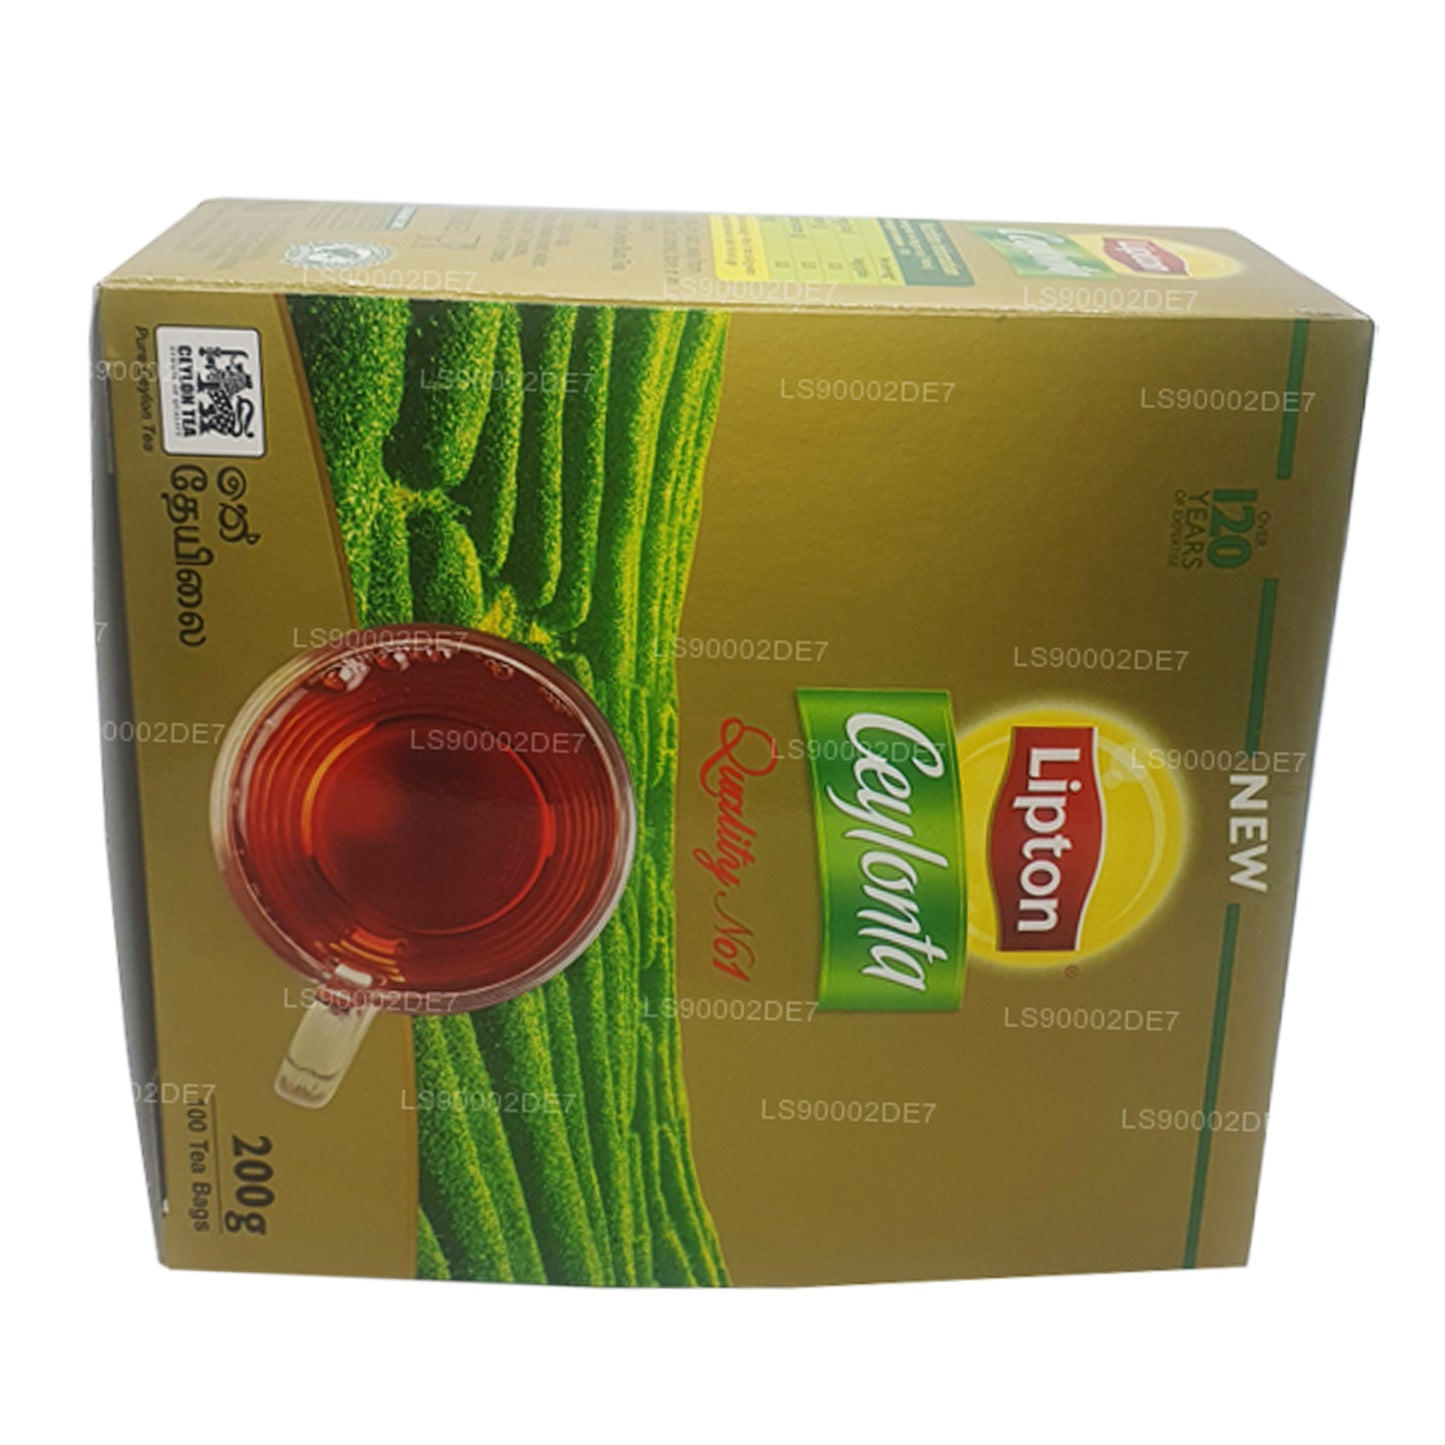 Чай «Липтон Цейлонта» (200 г) 100 пакетиков